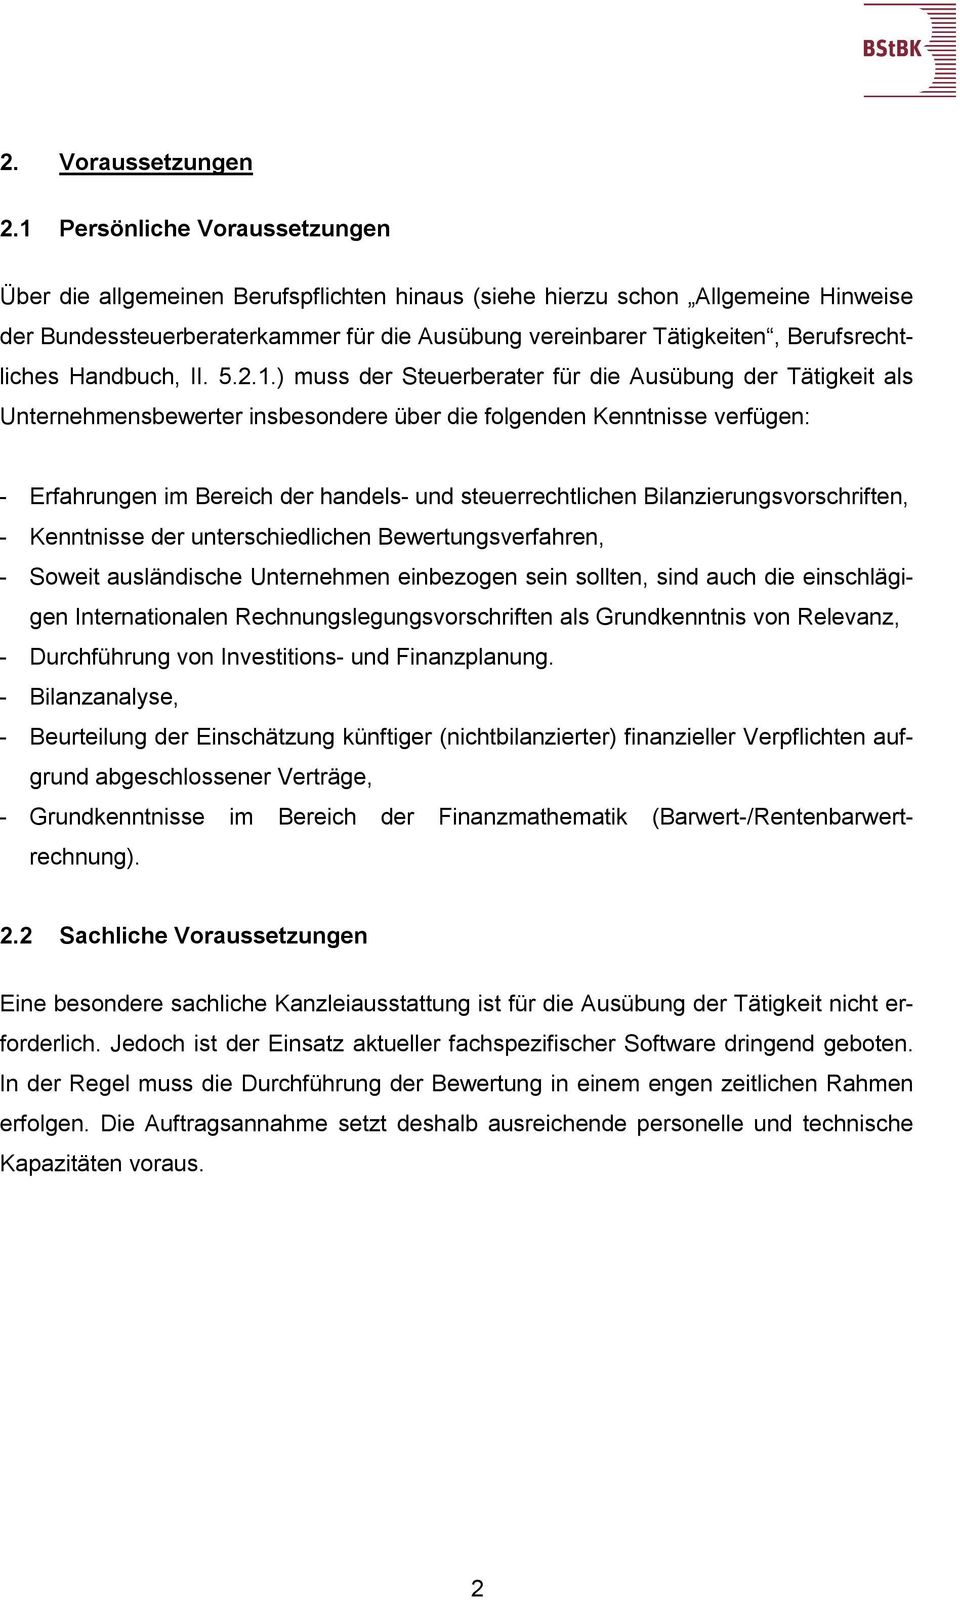 Berufsrechtliches Handbuch, II. 5.2.1.